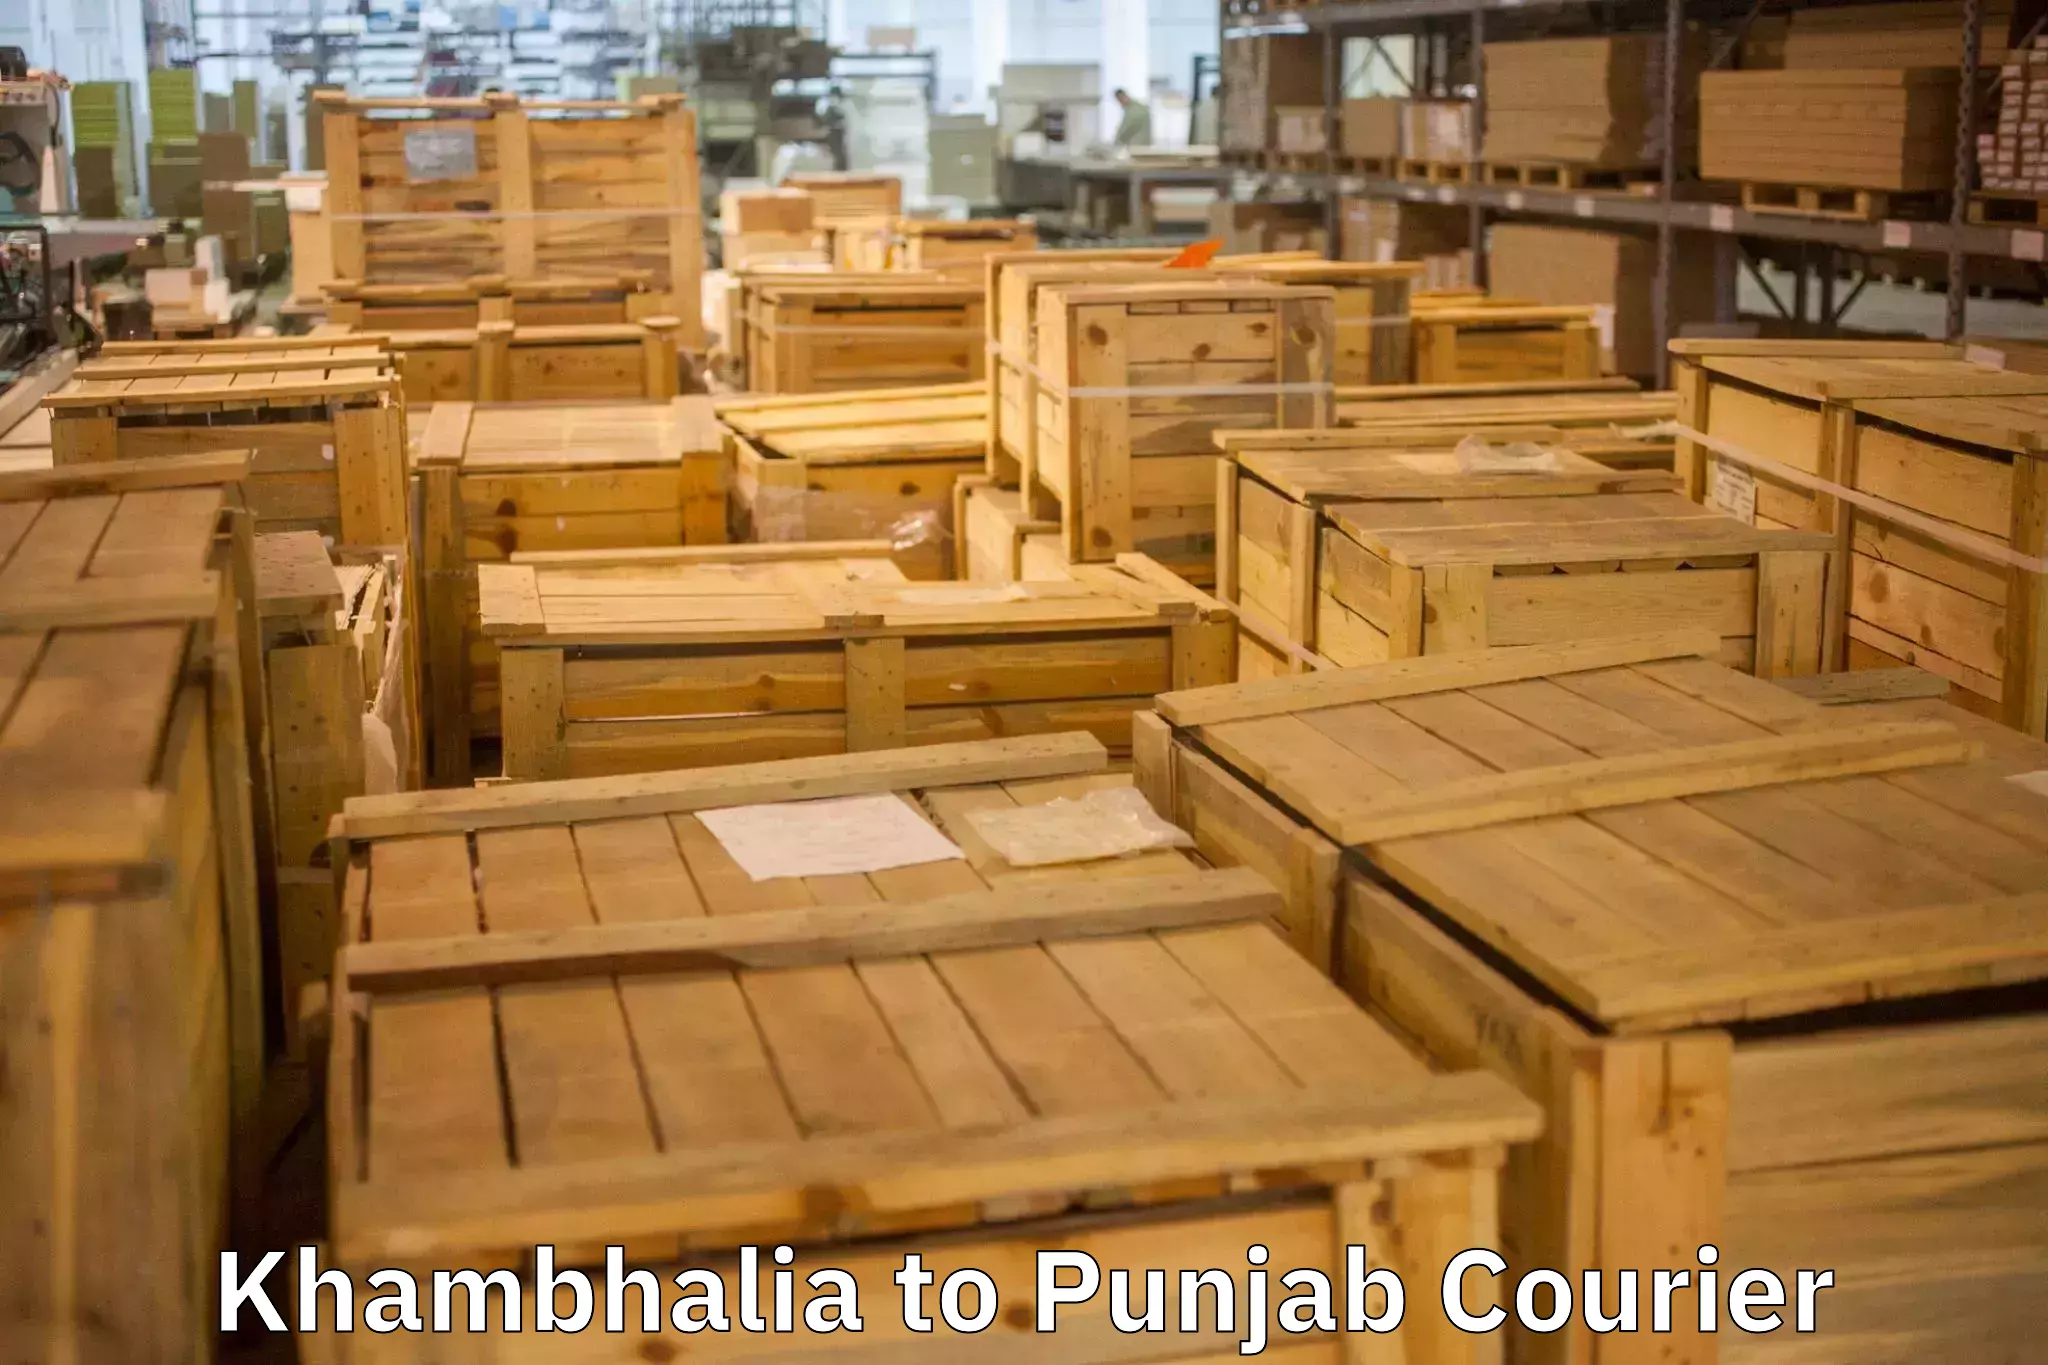 Quality moving services Khambhalia to Punjab